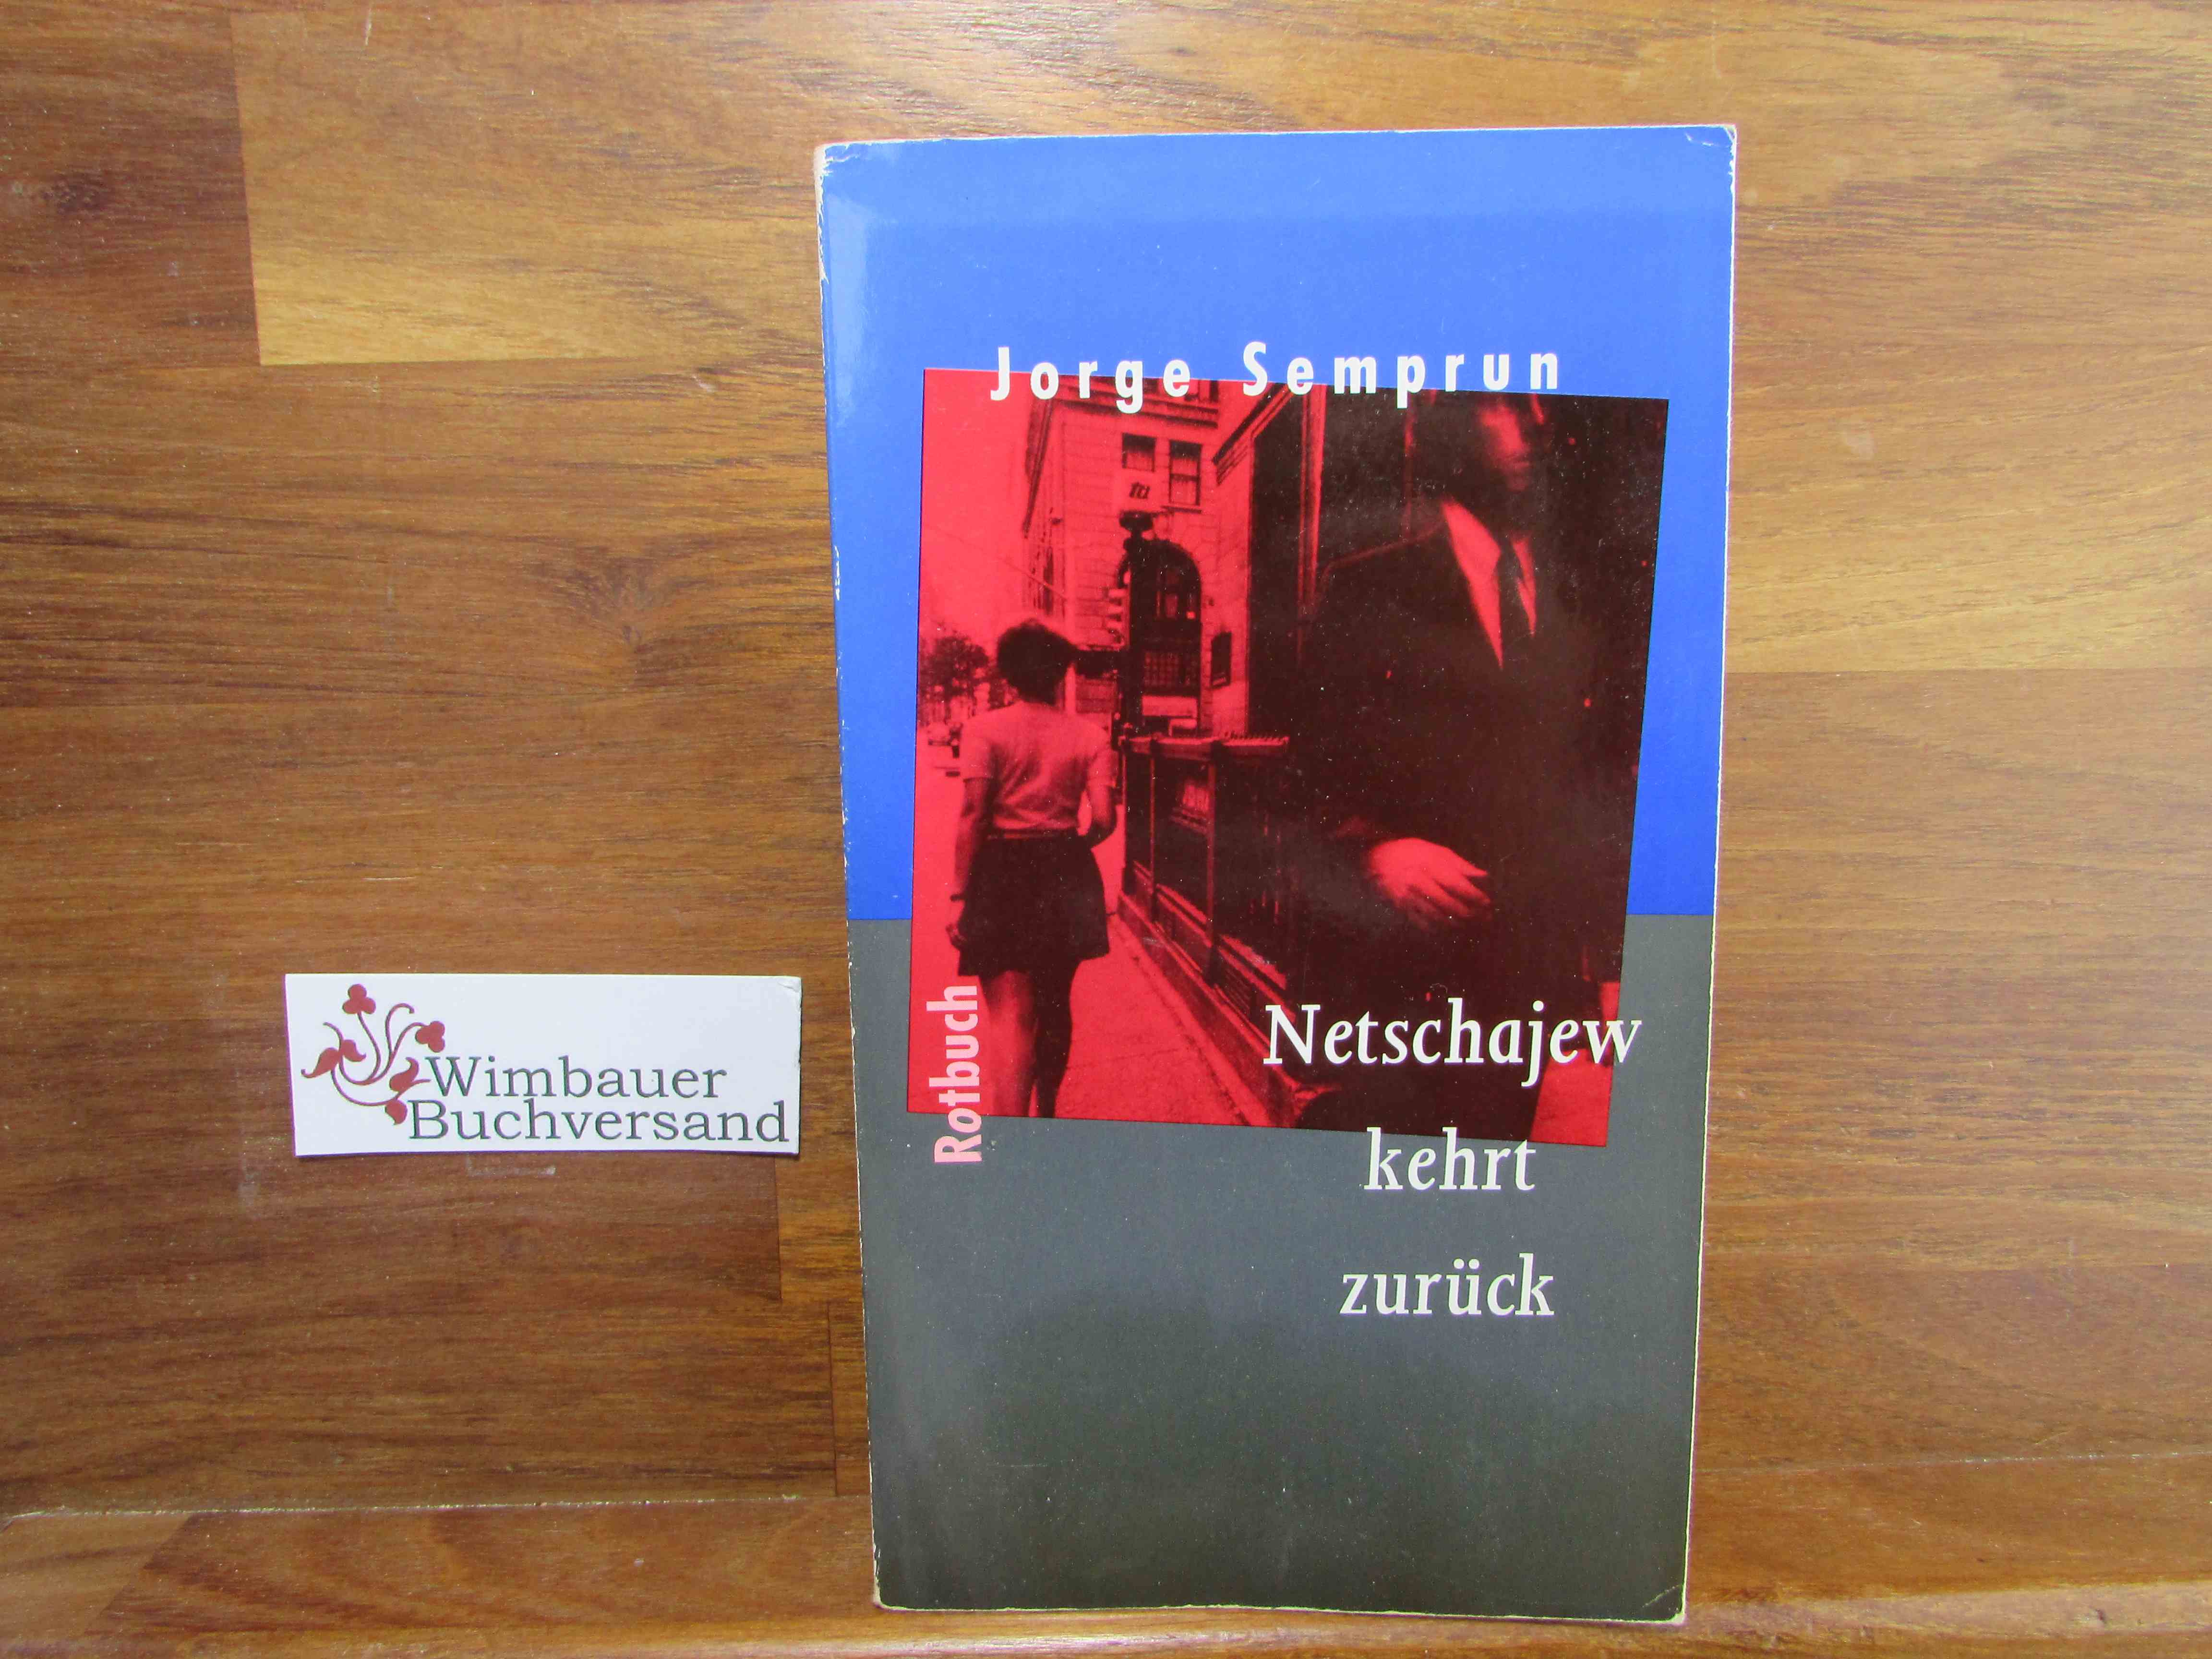 Netschajew kehrt zurück. Jorge Semprun. Aus dem Franz. von Eva Moldenhauer / Rotbuch-Taschenbuch ; 52 - Semprun, Jorge